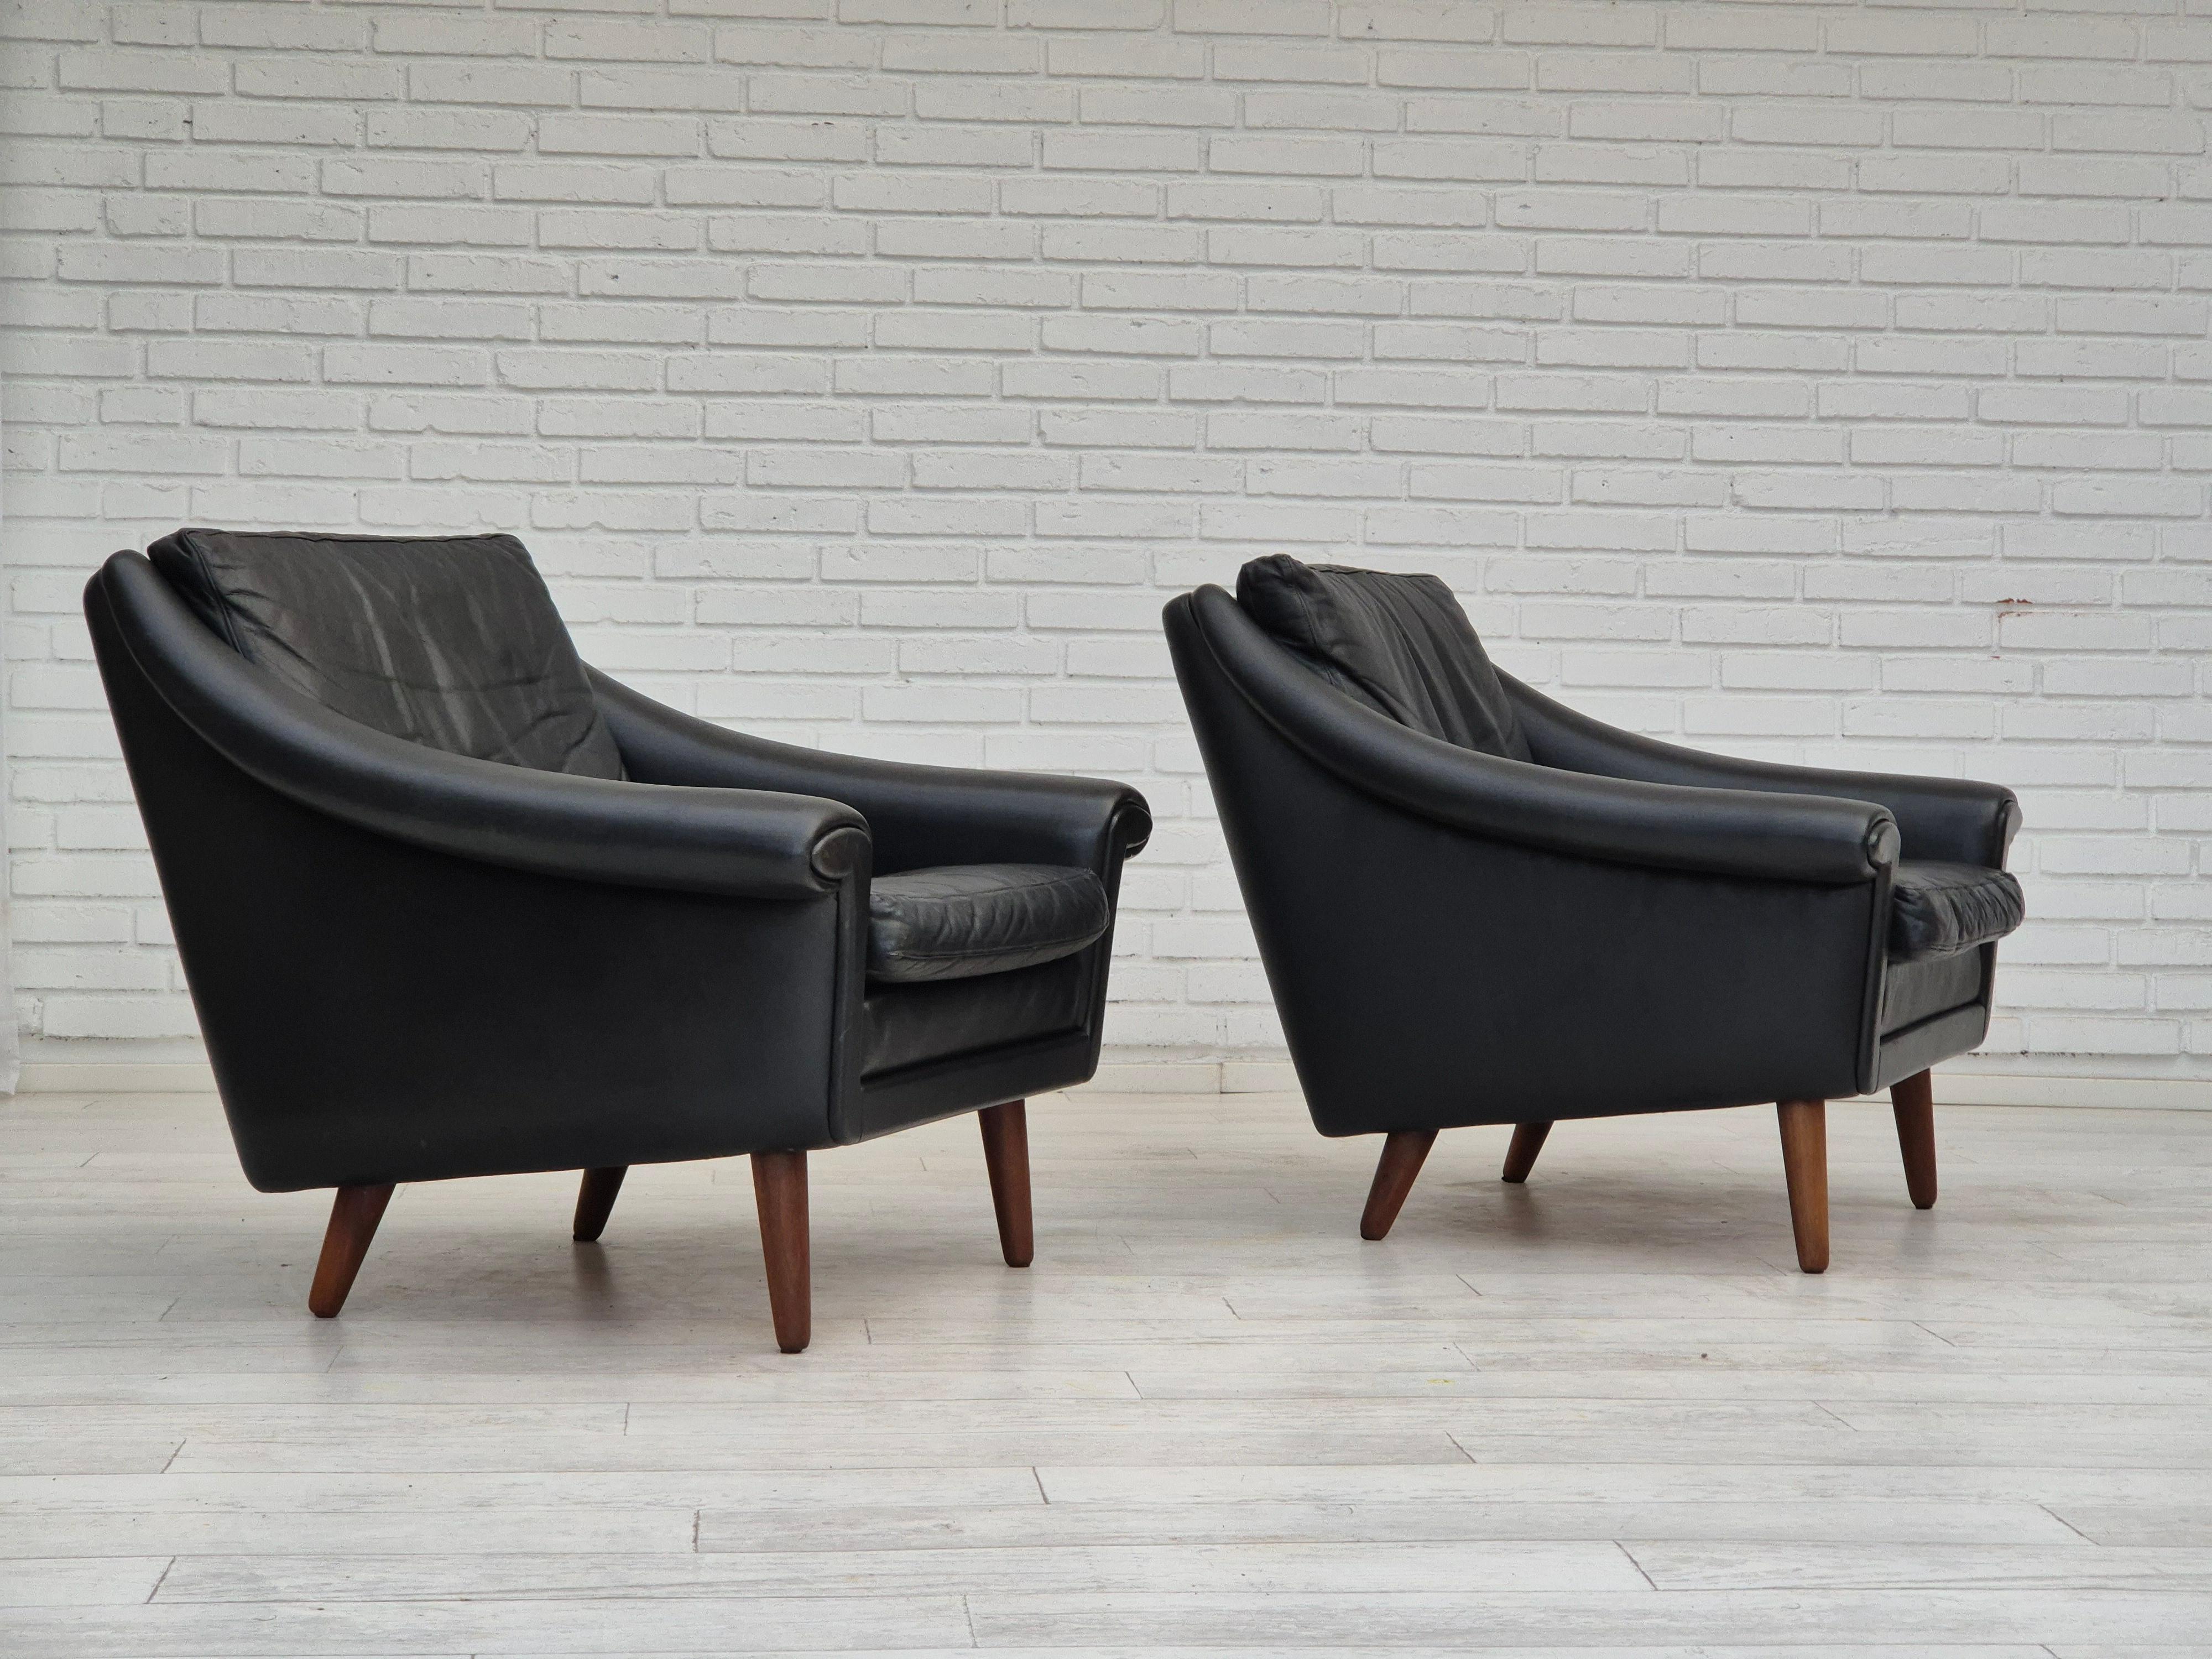 Années 1960, design danois par Aage Christiansen pour Erhardsen & Andersen, Nykøbing Mors. Paire de deux chaises longues modèle 